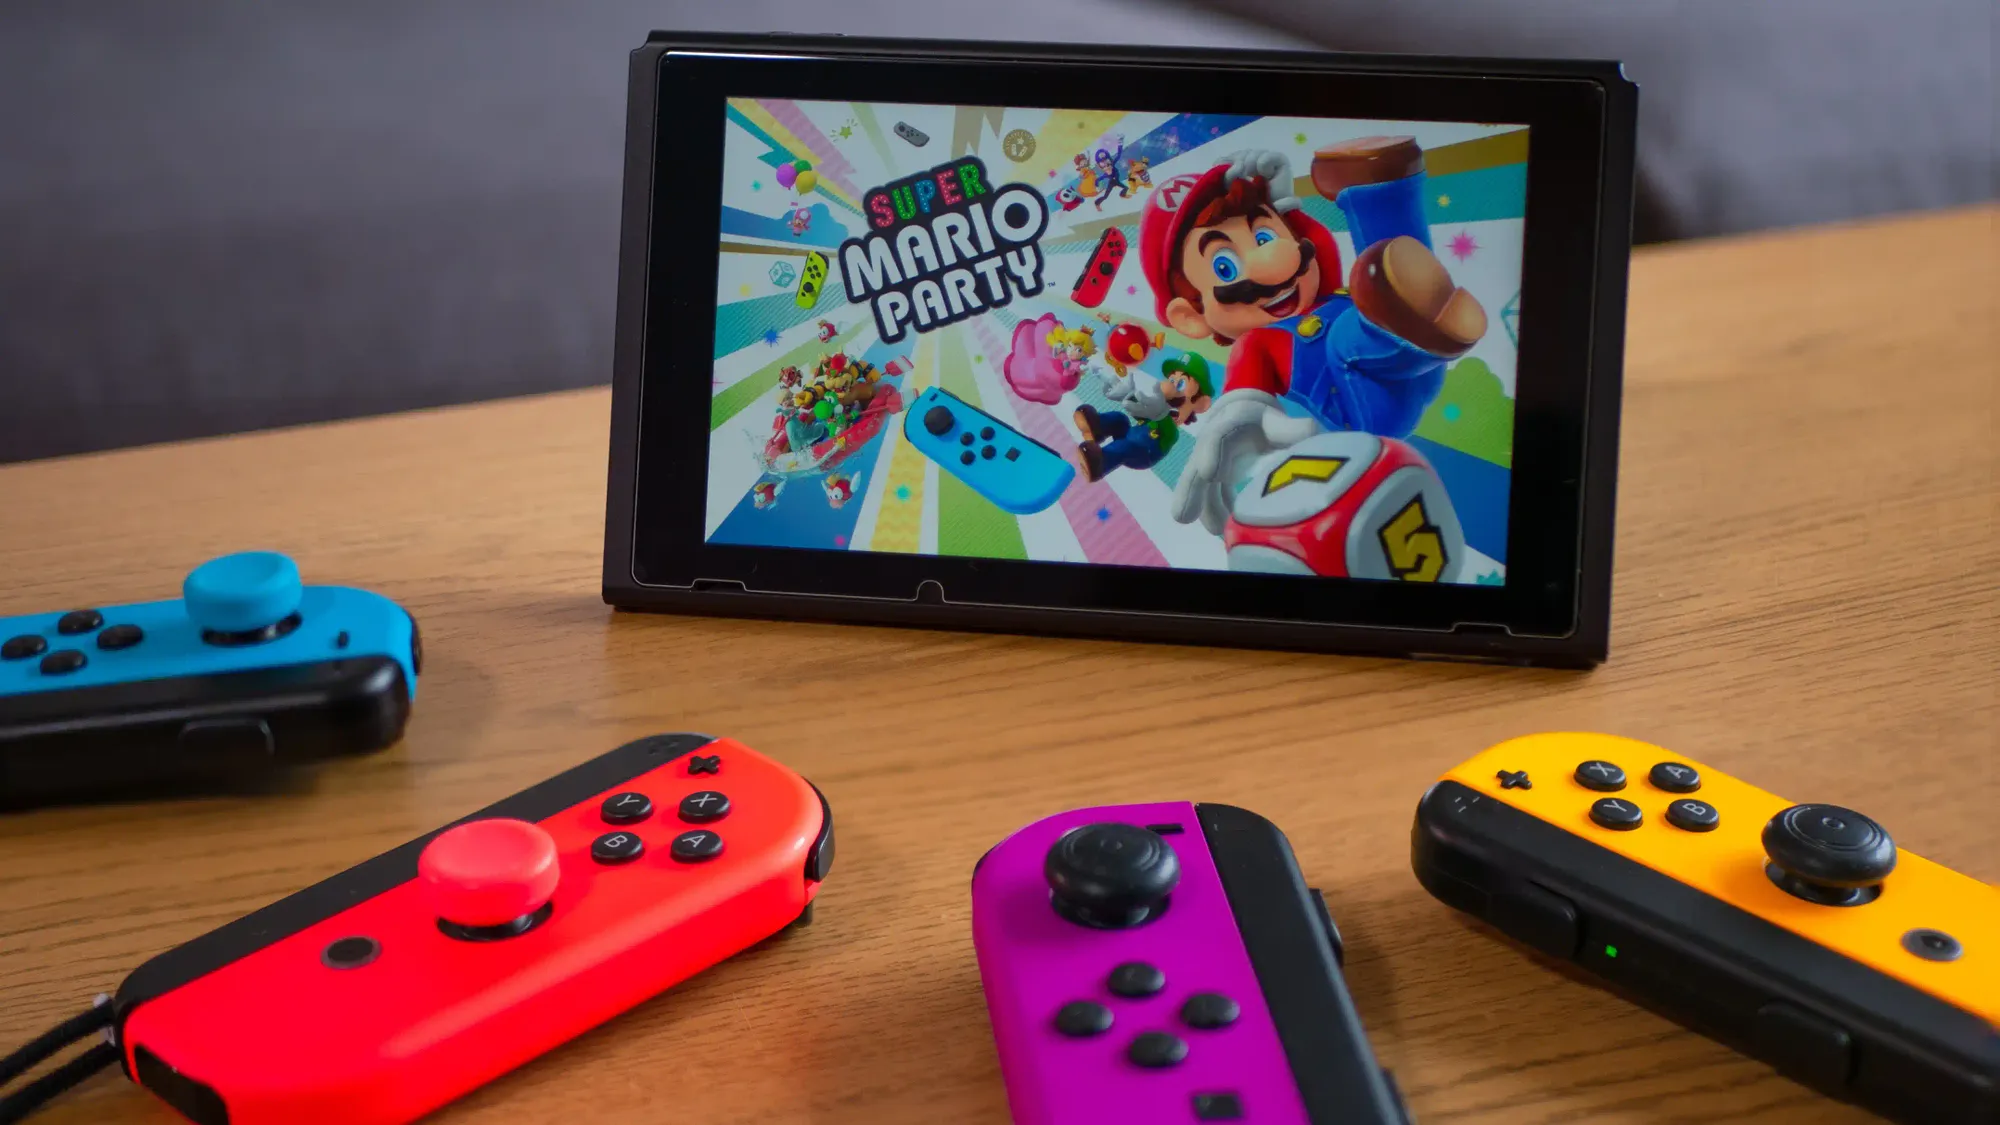 Pague Barato e Jogue Muito - Jogos Com o Melhor Custo x Benefício no Nintendo  Switch #NintendoBarato 